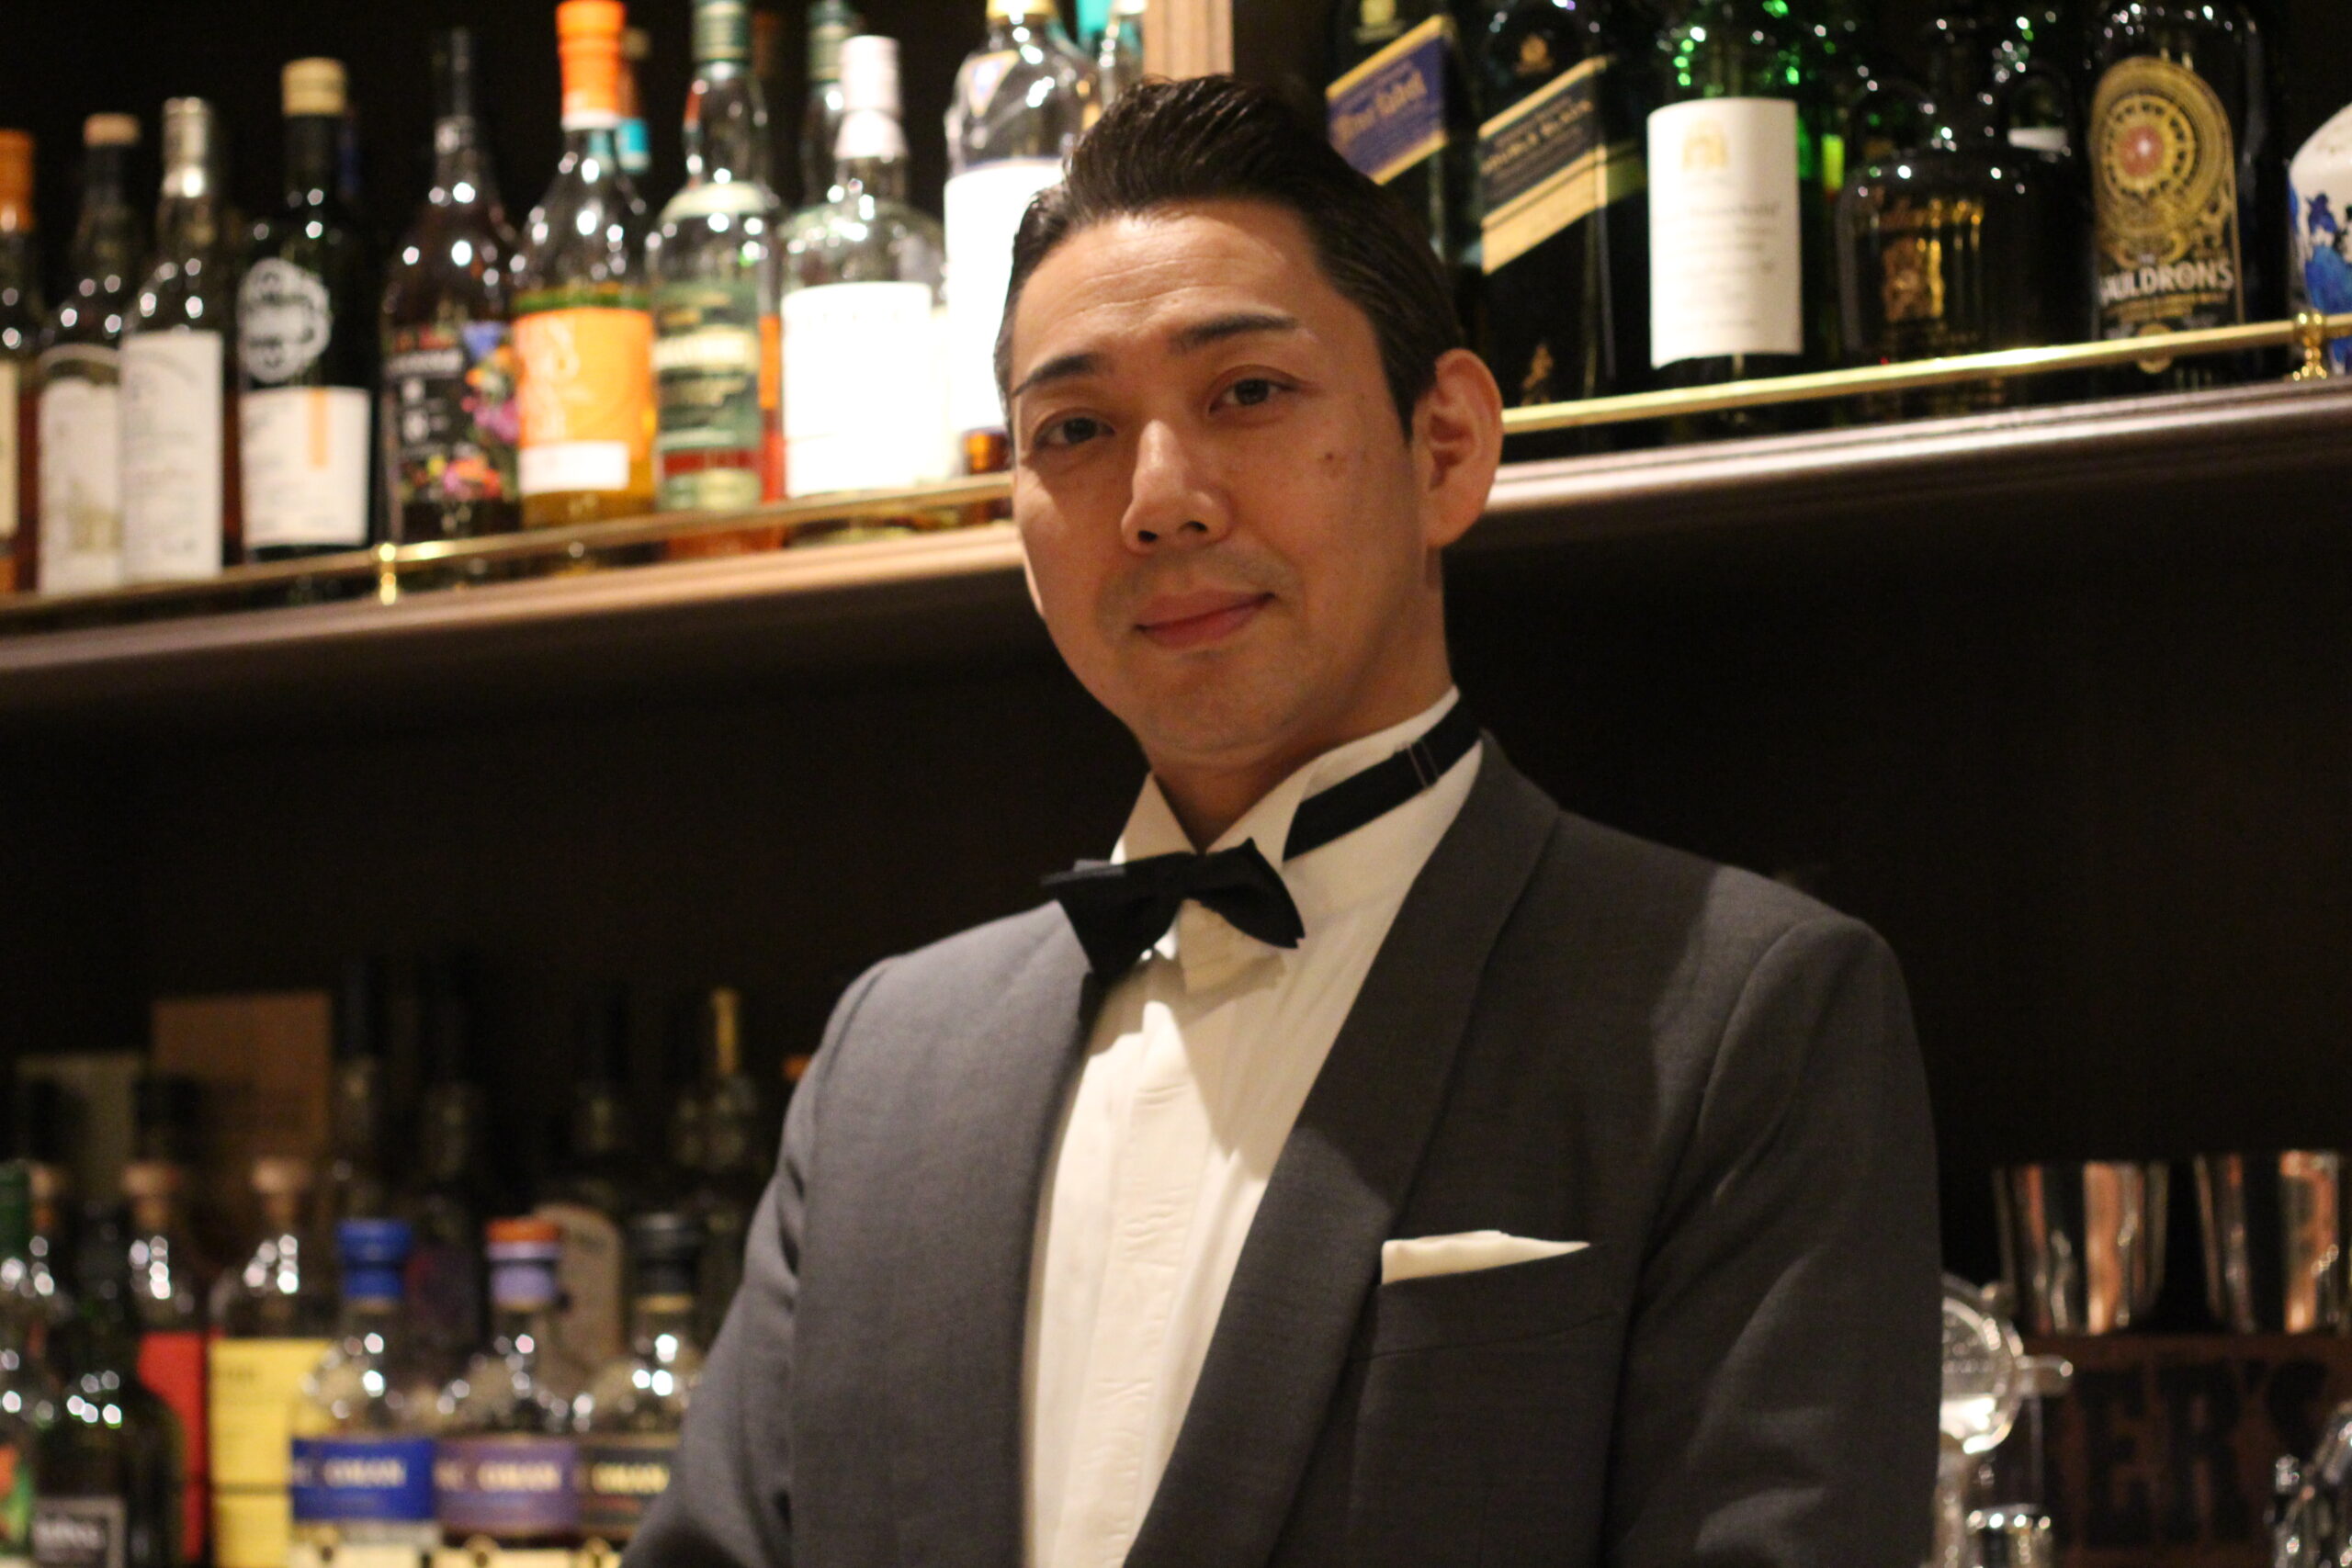 バーへようこそ#6 東京・銀座 BAR AGROS 偉大なバーテンダーの遺志を